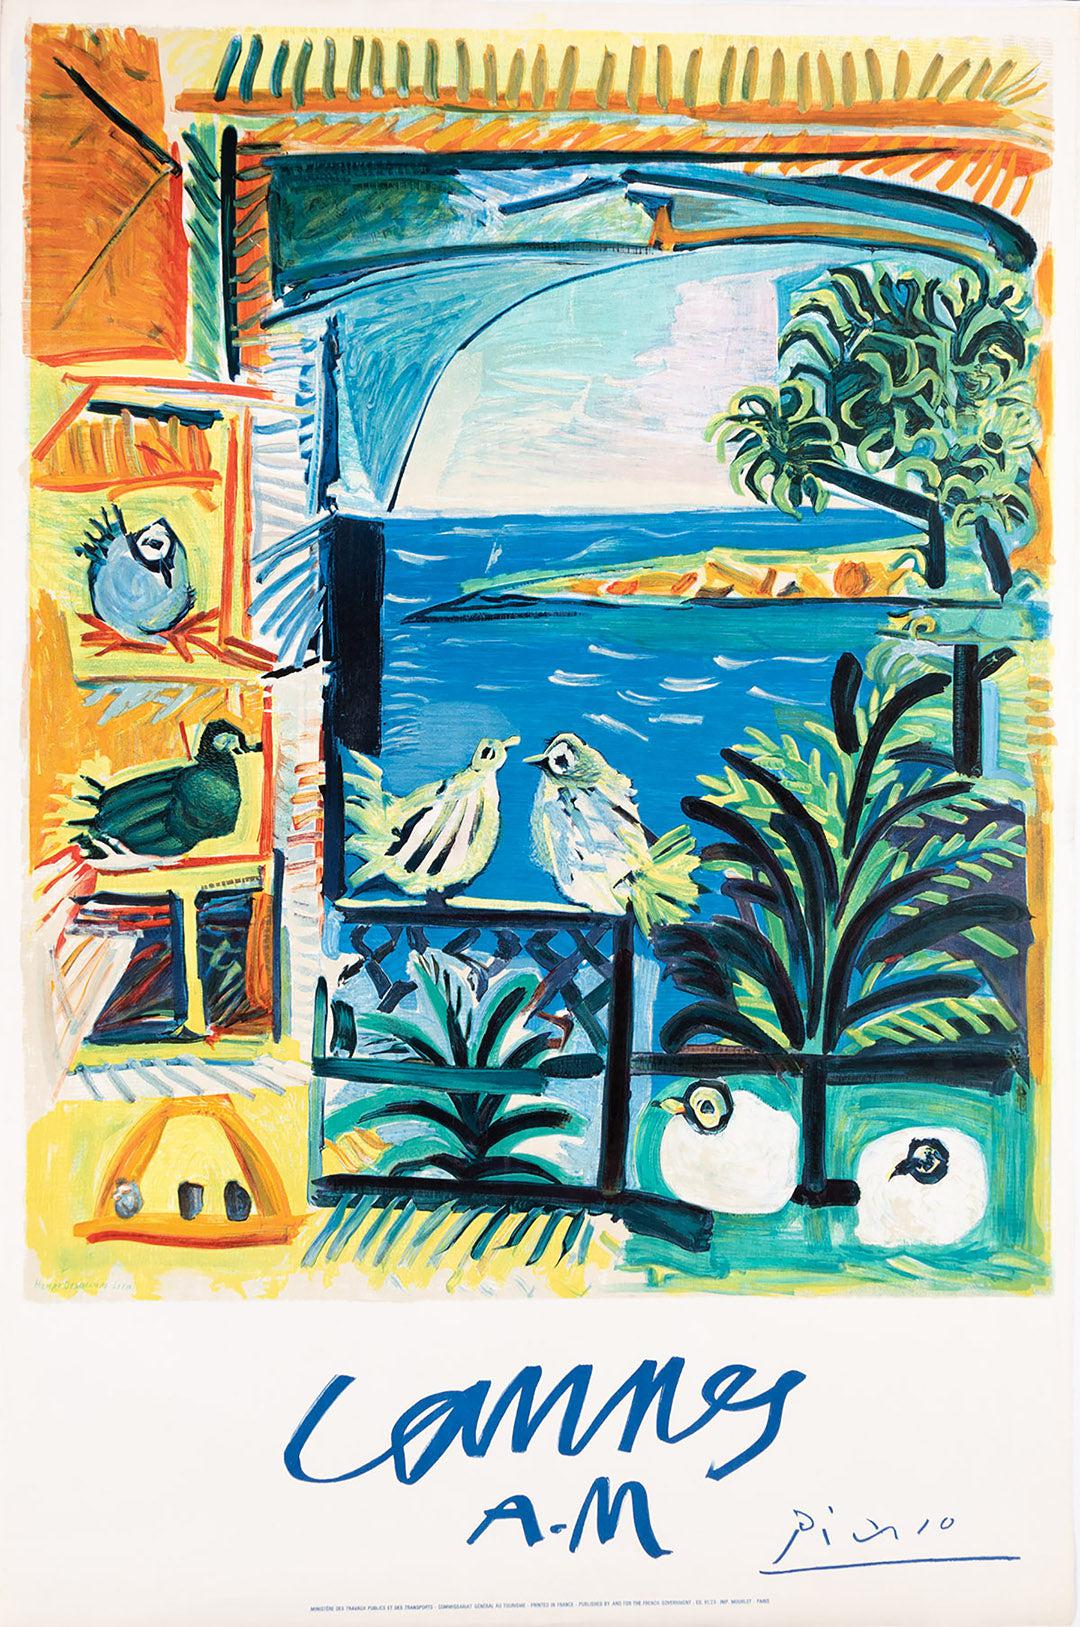 Original Vintage Cannes A.M. Pablo Picasso Travel Poster 1961